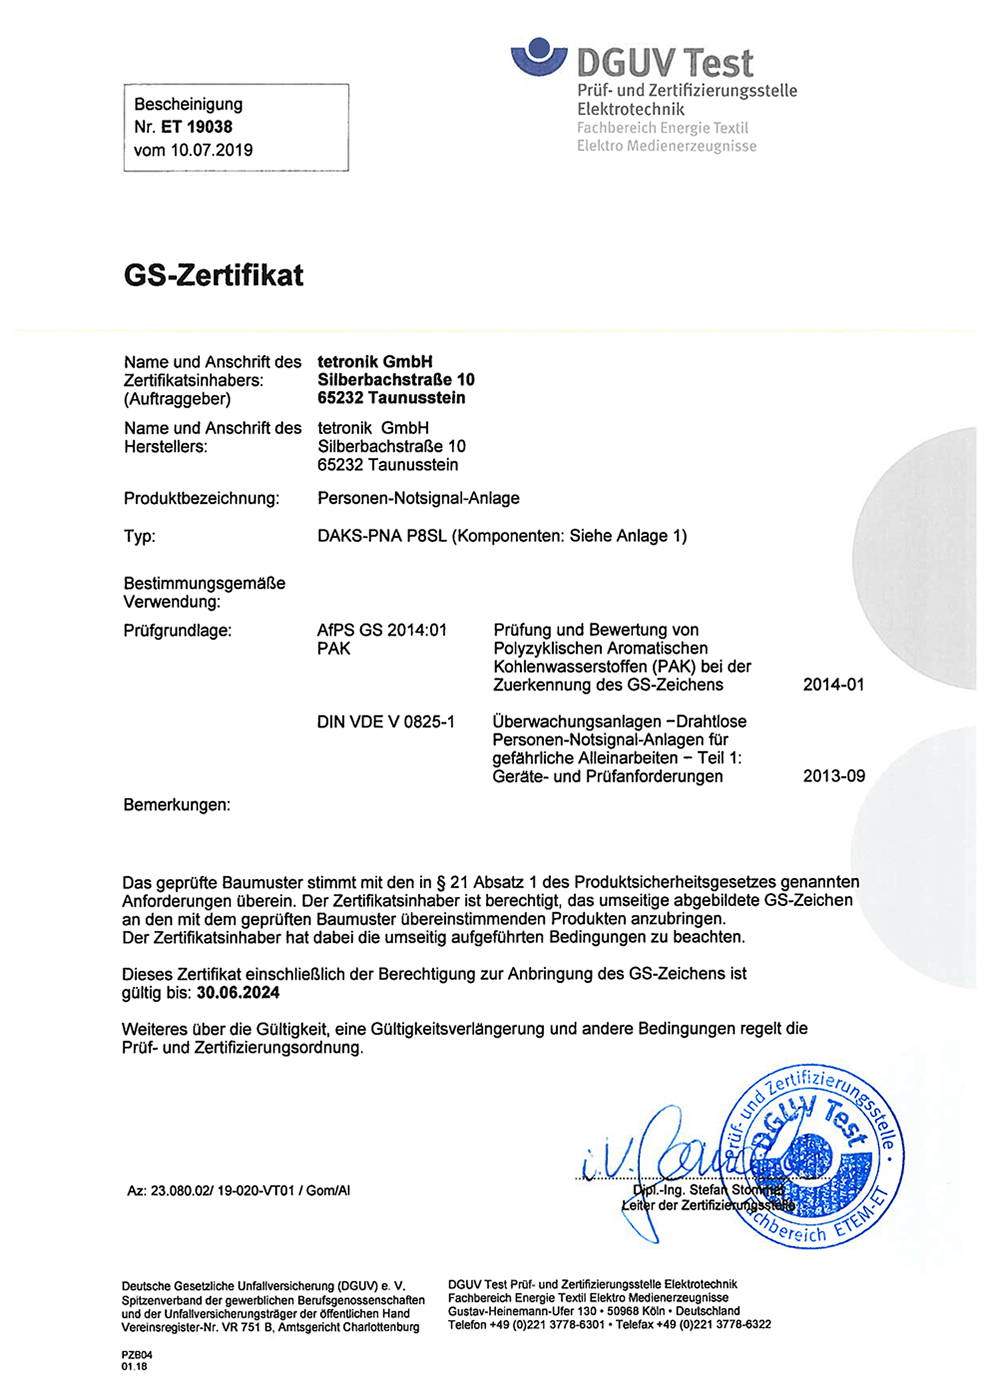 DGUV certificate for DAKS-PNA P8SL